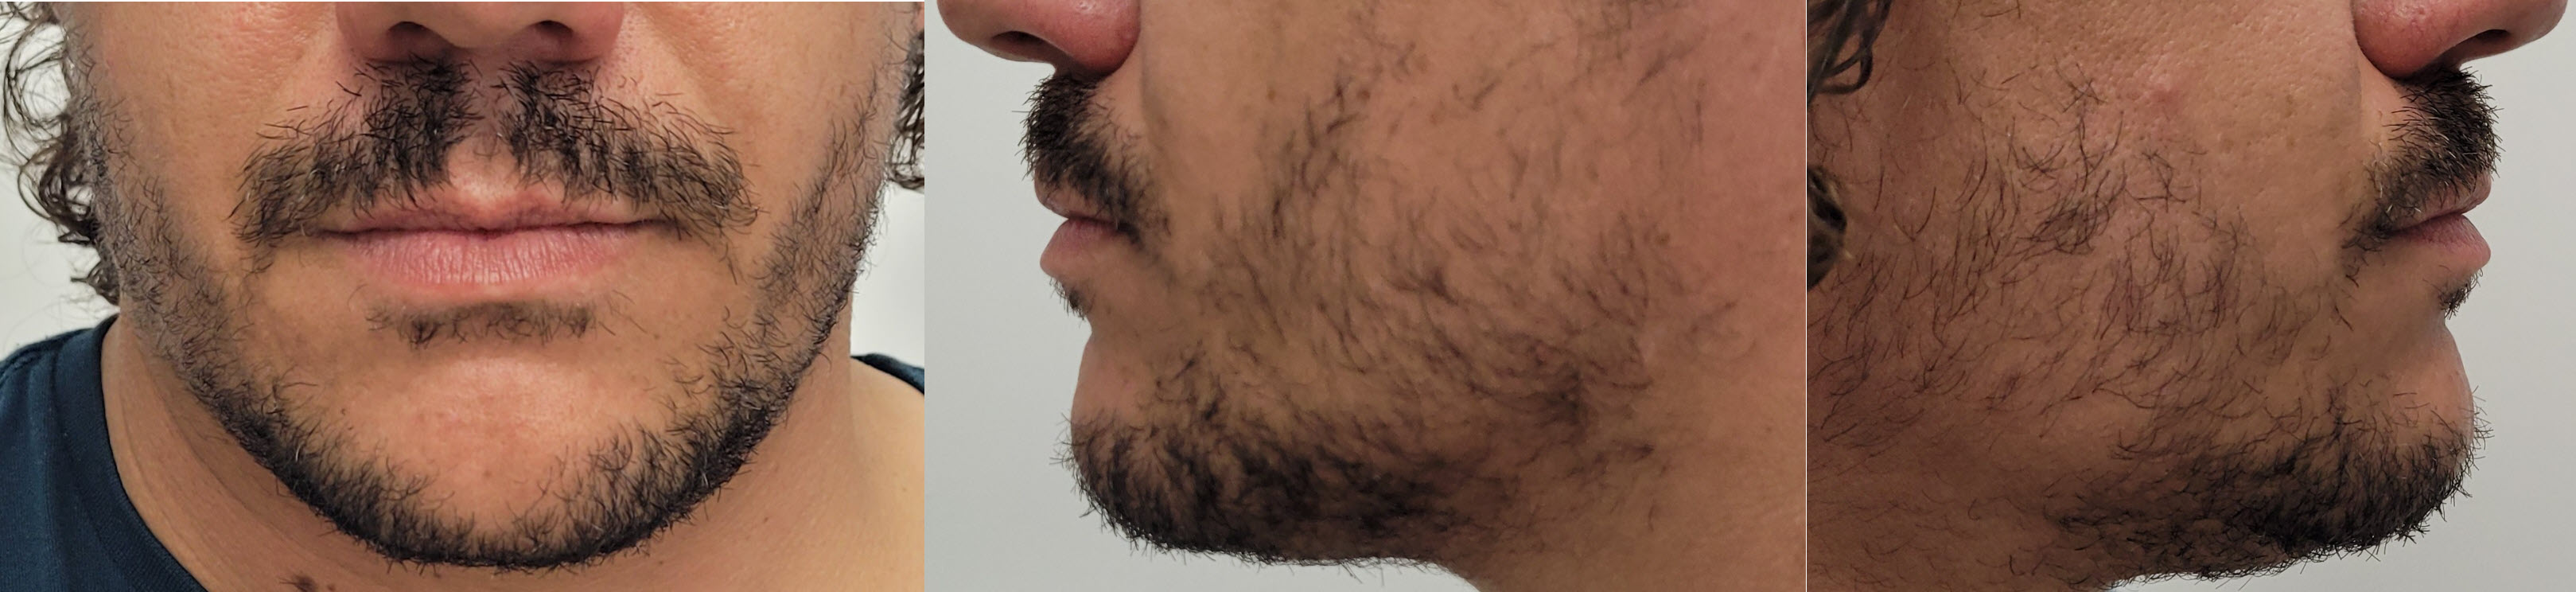 blog/growing-a-beard/2021-12-20.jpg